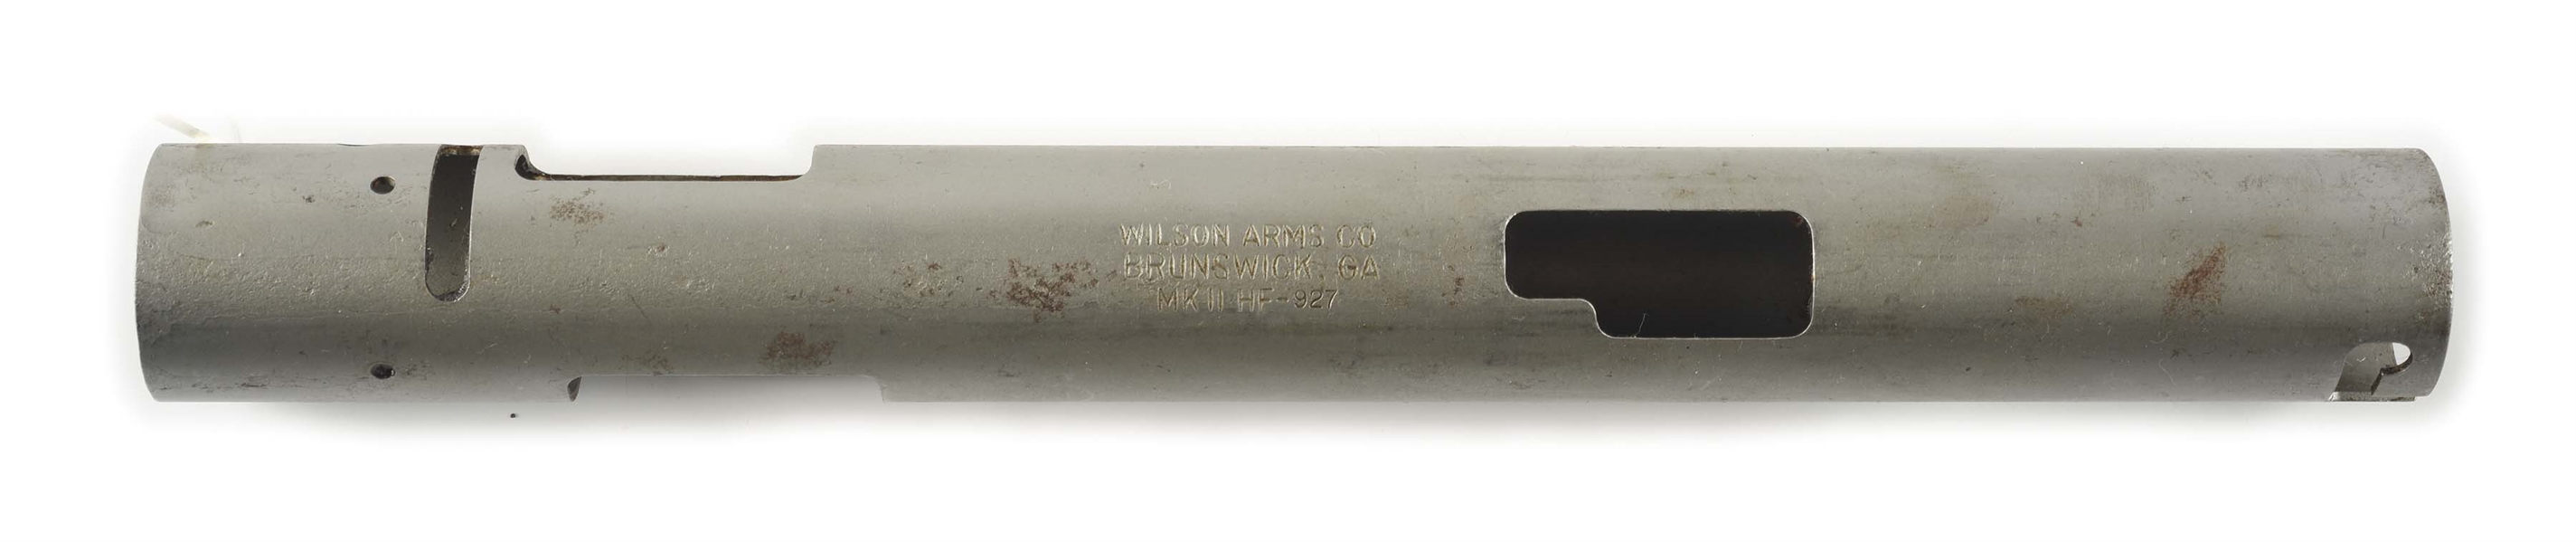 (N) WILSON ARMS REGISTERED STEN MK II MACHINE GUN RECEIVER TUBE.